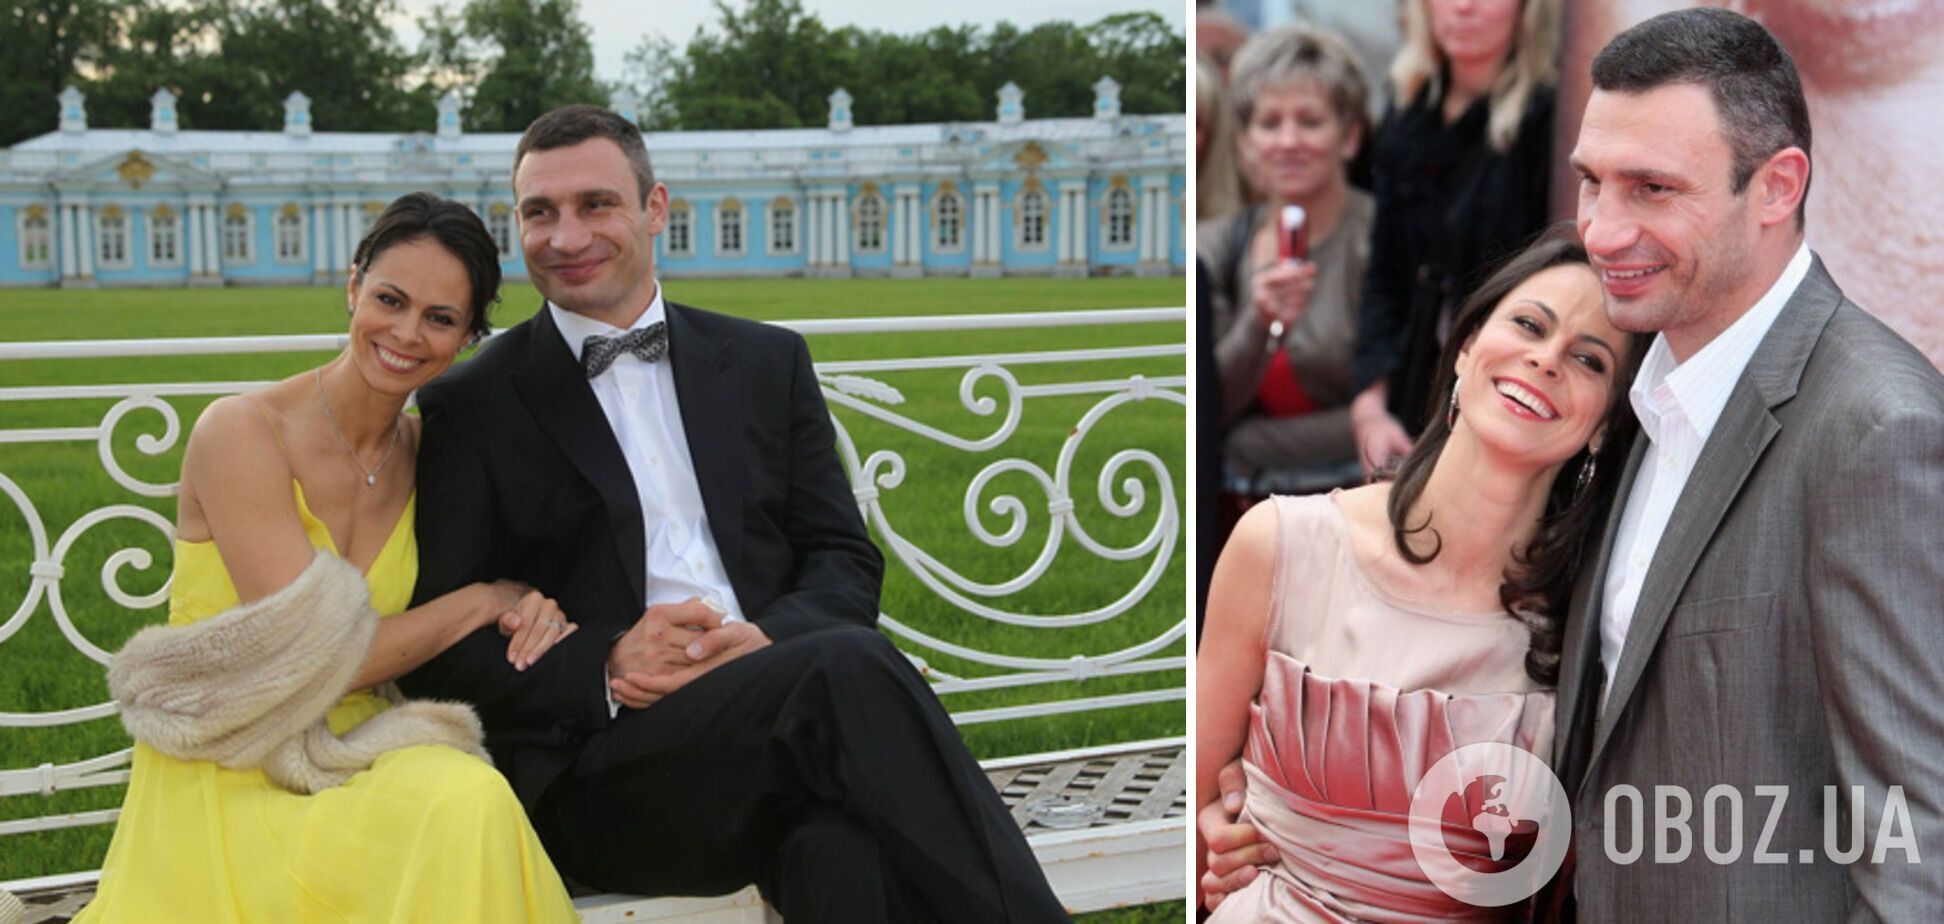 Мер Києва Віталій Кличко розлучився зі своєю дружиною після 25 років шлюбу